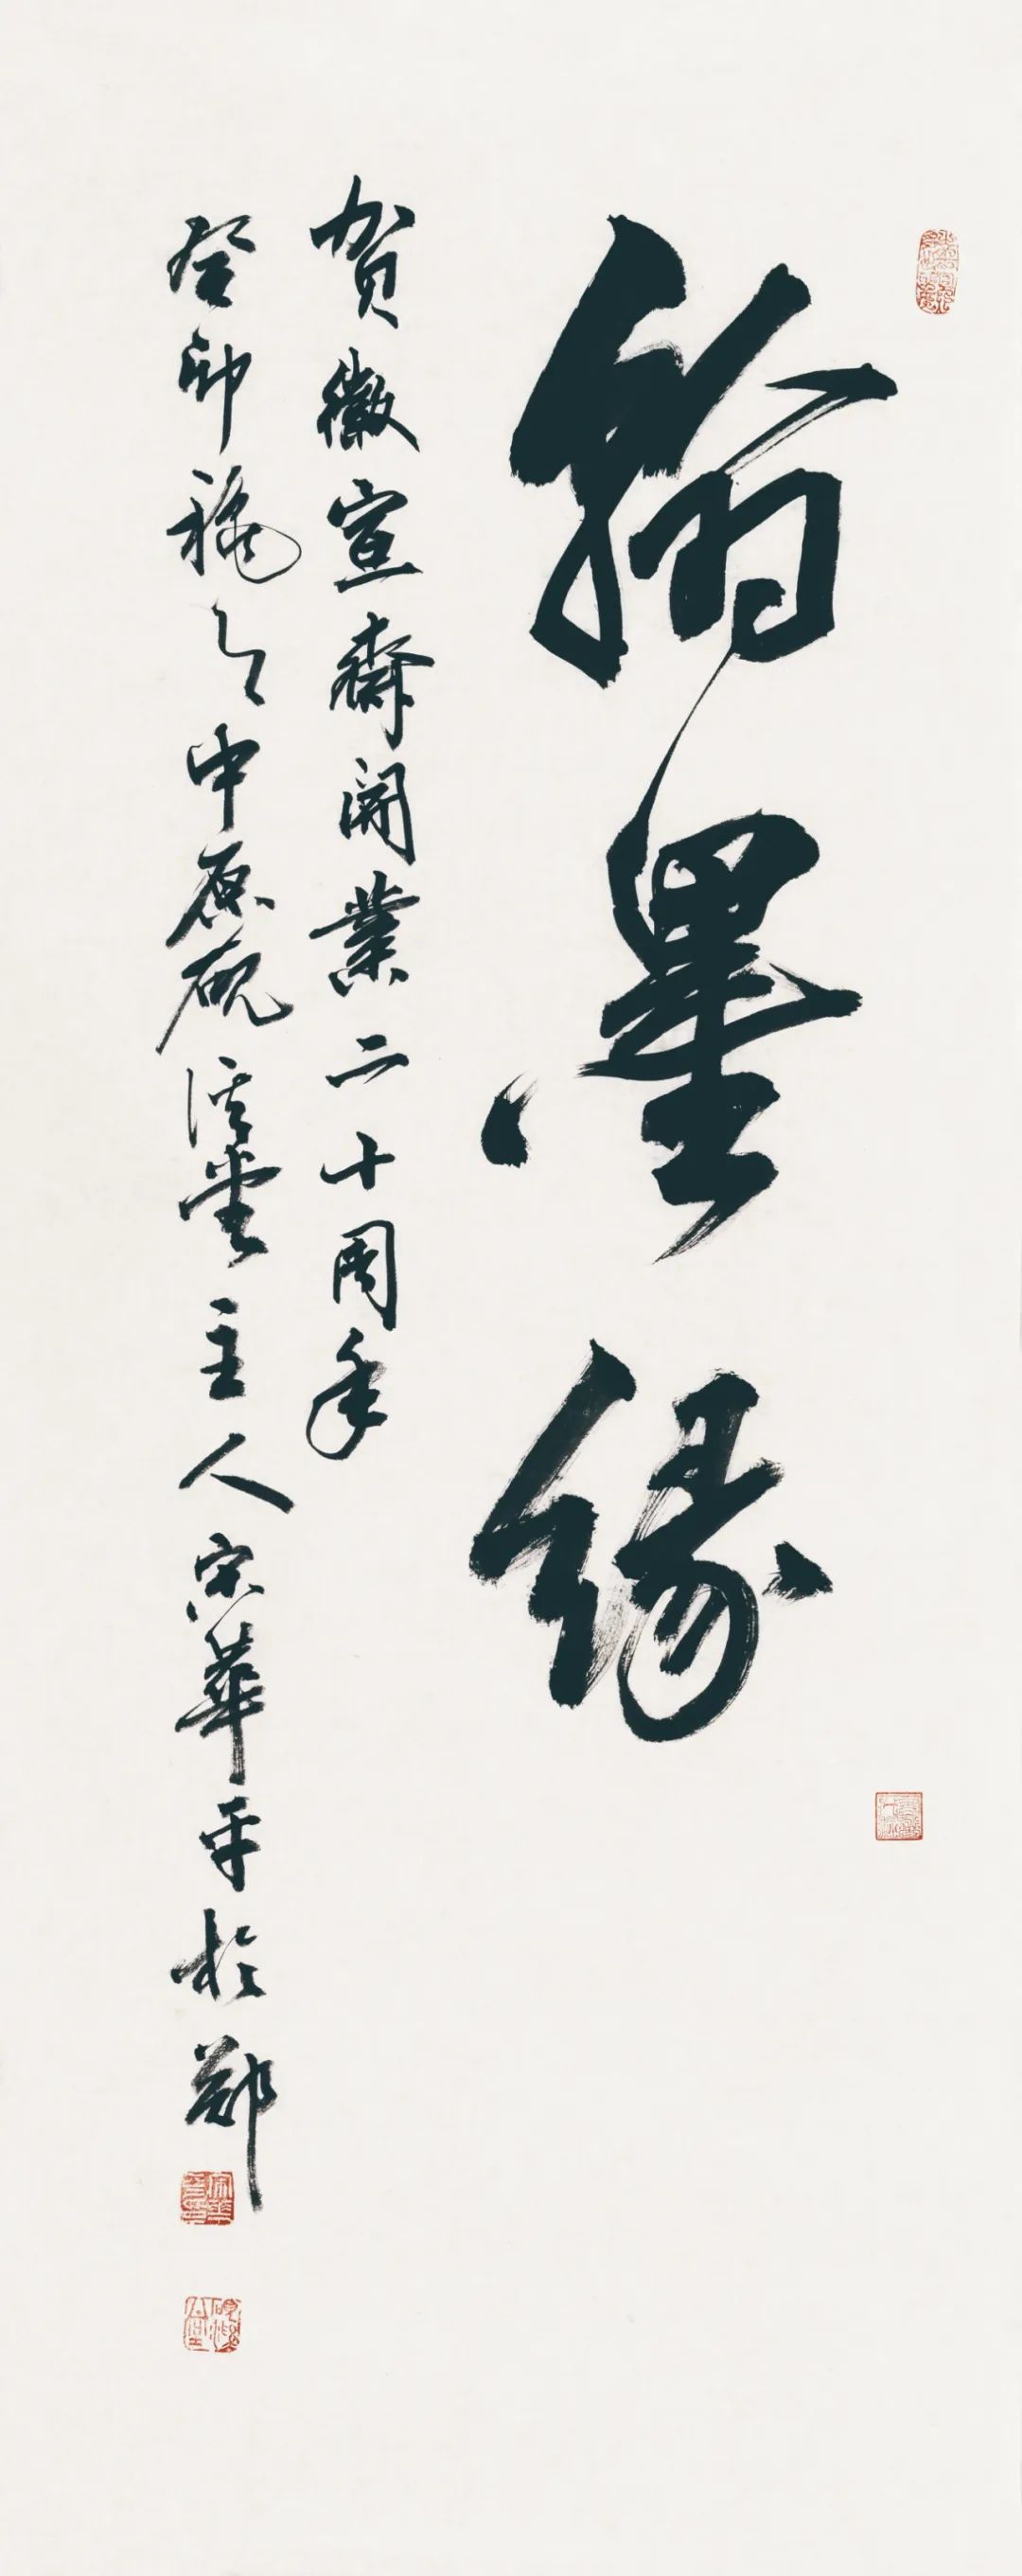 藏·展览丨纸笺传情，笔墨放歌——河南书法名家邀请展 12月24日开幕(图2)